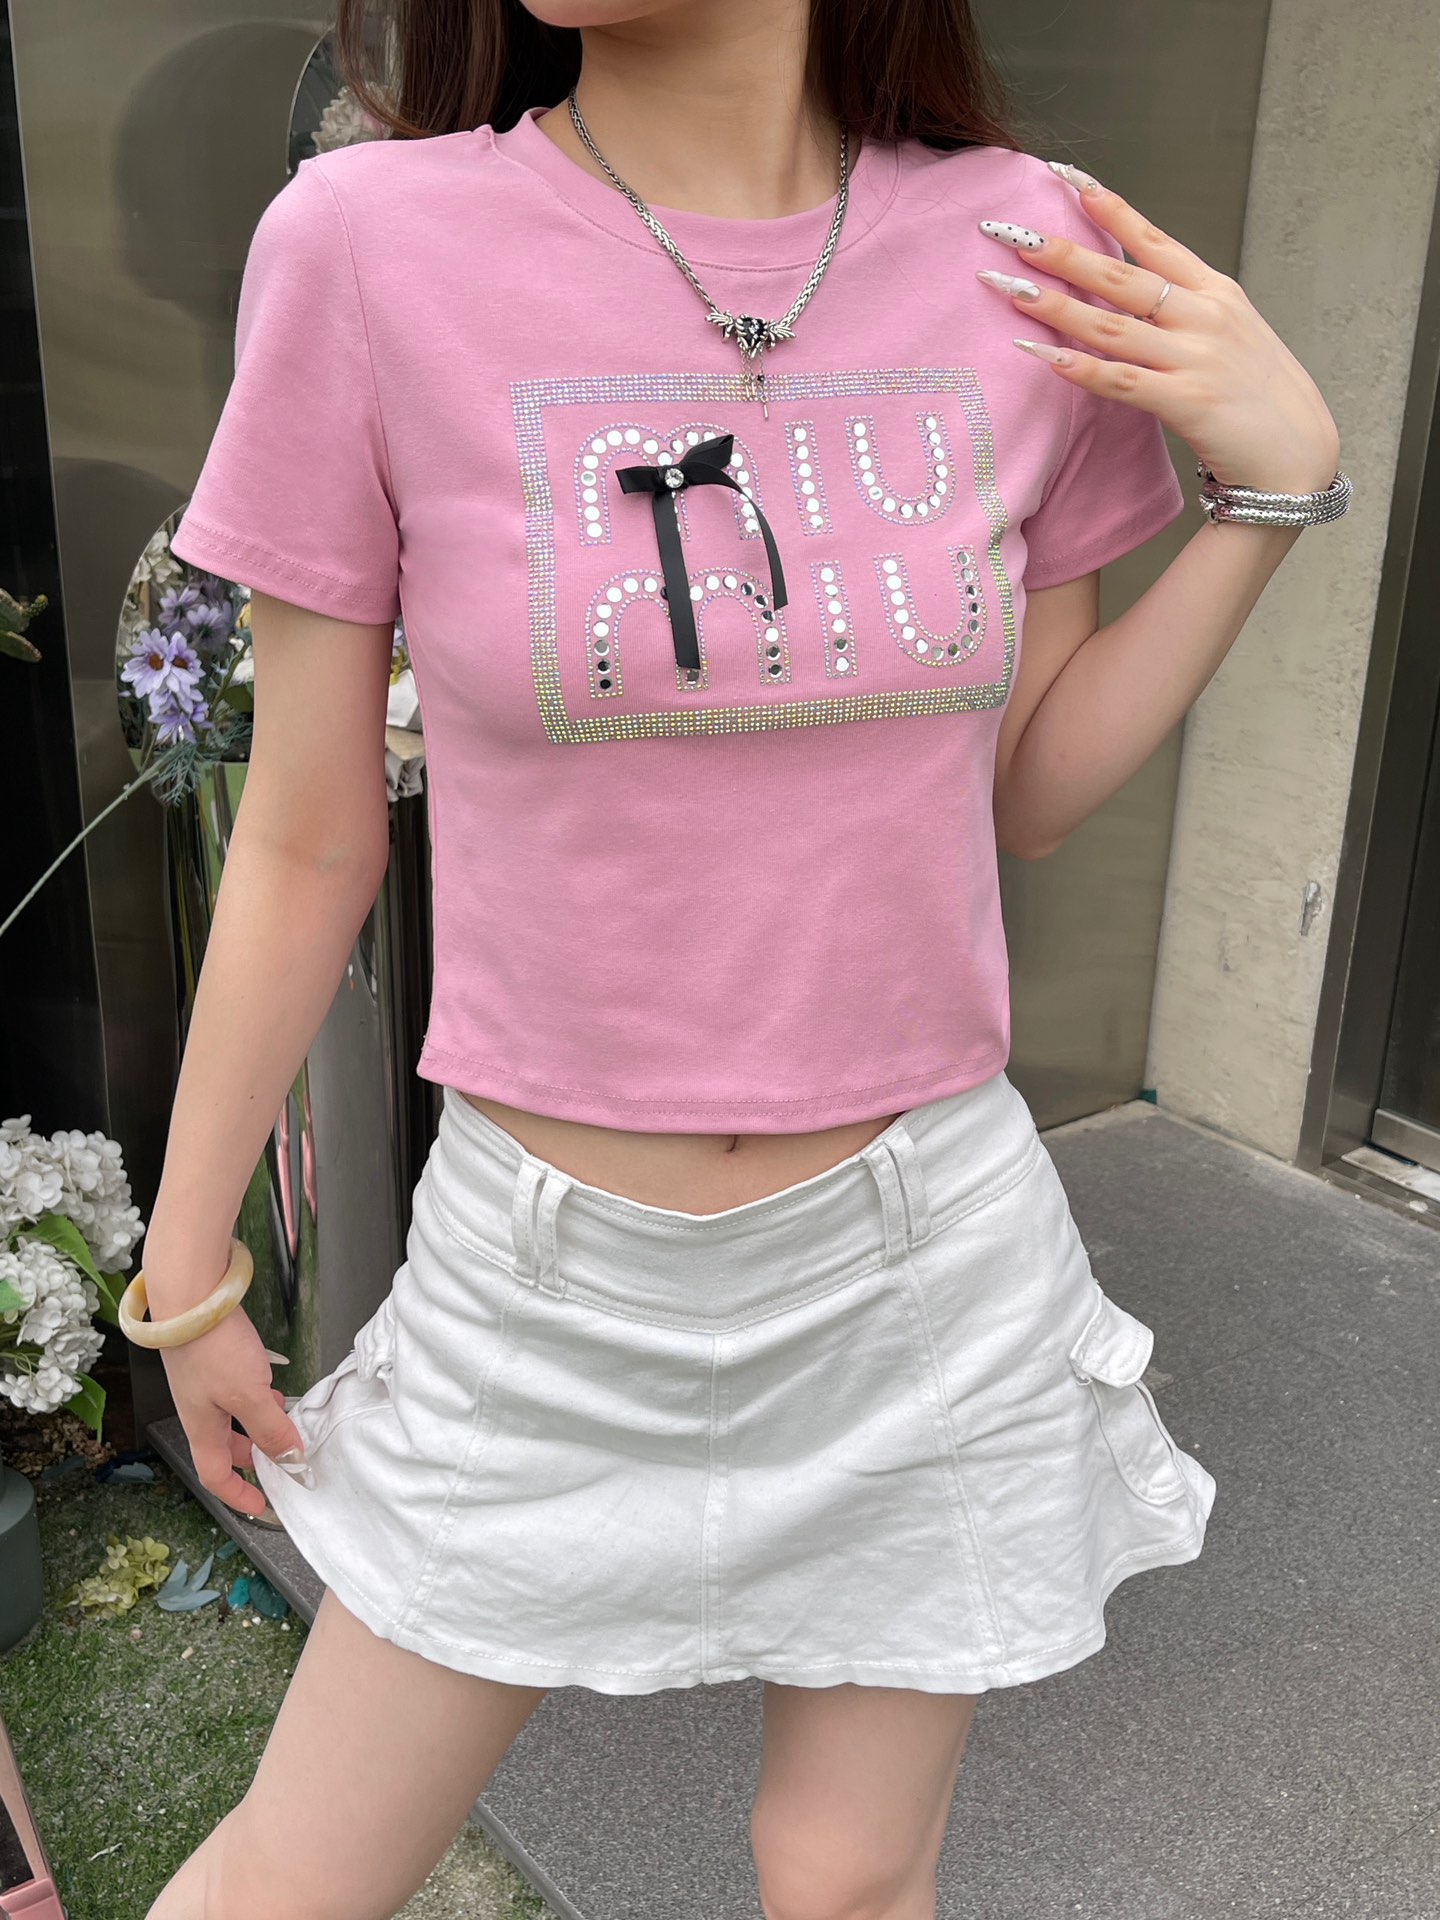 ミュウミュウ ロンt偽物 純綿 トップス Tシャツ 少女感 ショット 柔らかい セクシー ファッション ピンク_1